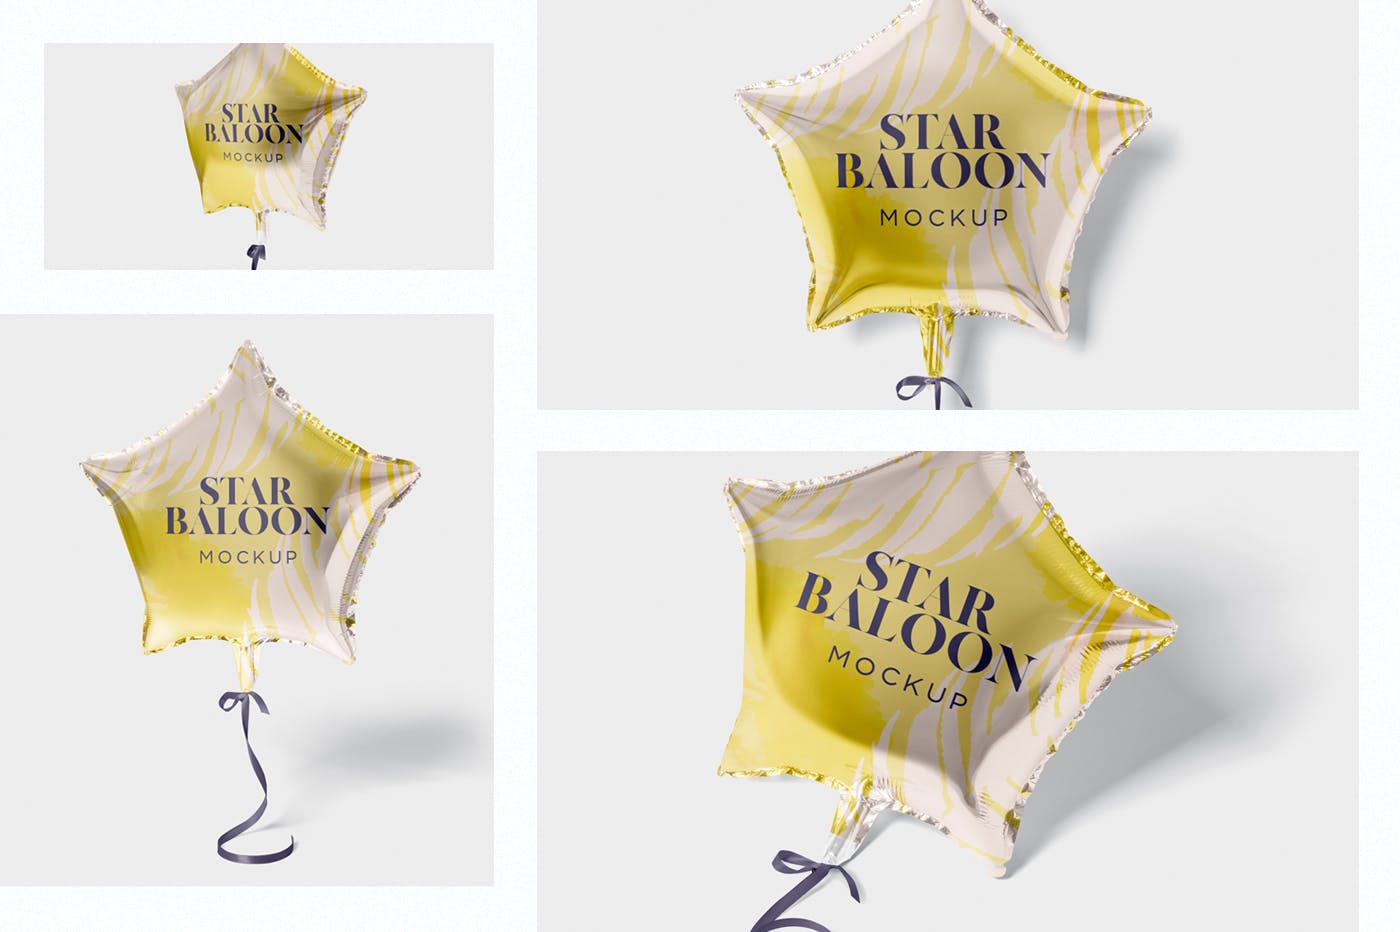 气球星星装饰物图案设计样机第一素材精选模板 Star Balloon Mockup插图(1)